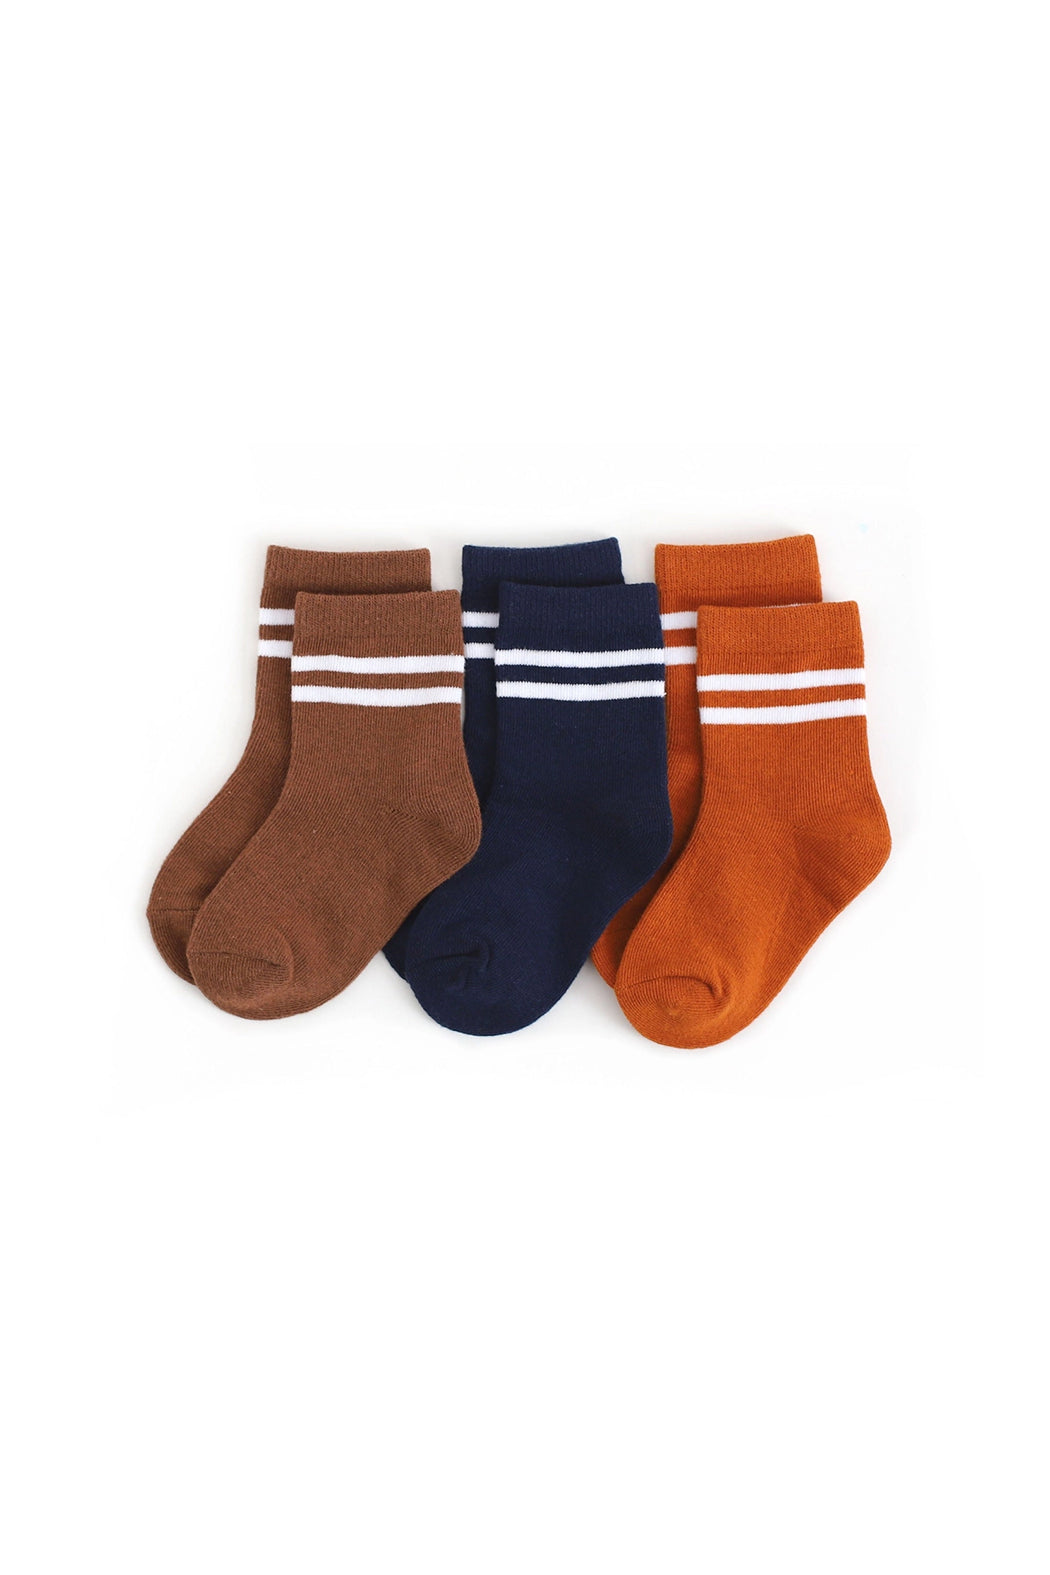 Little Stocking Co Game Day Stripe Midi Socks - 3 Pack